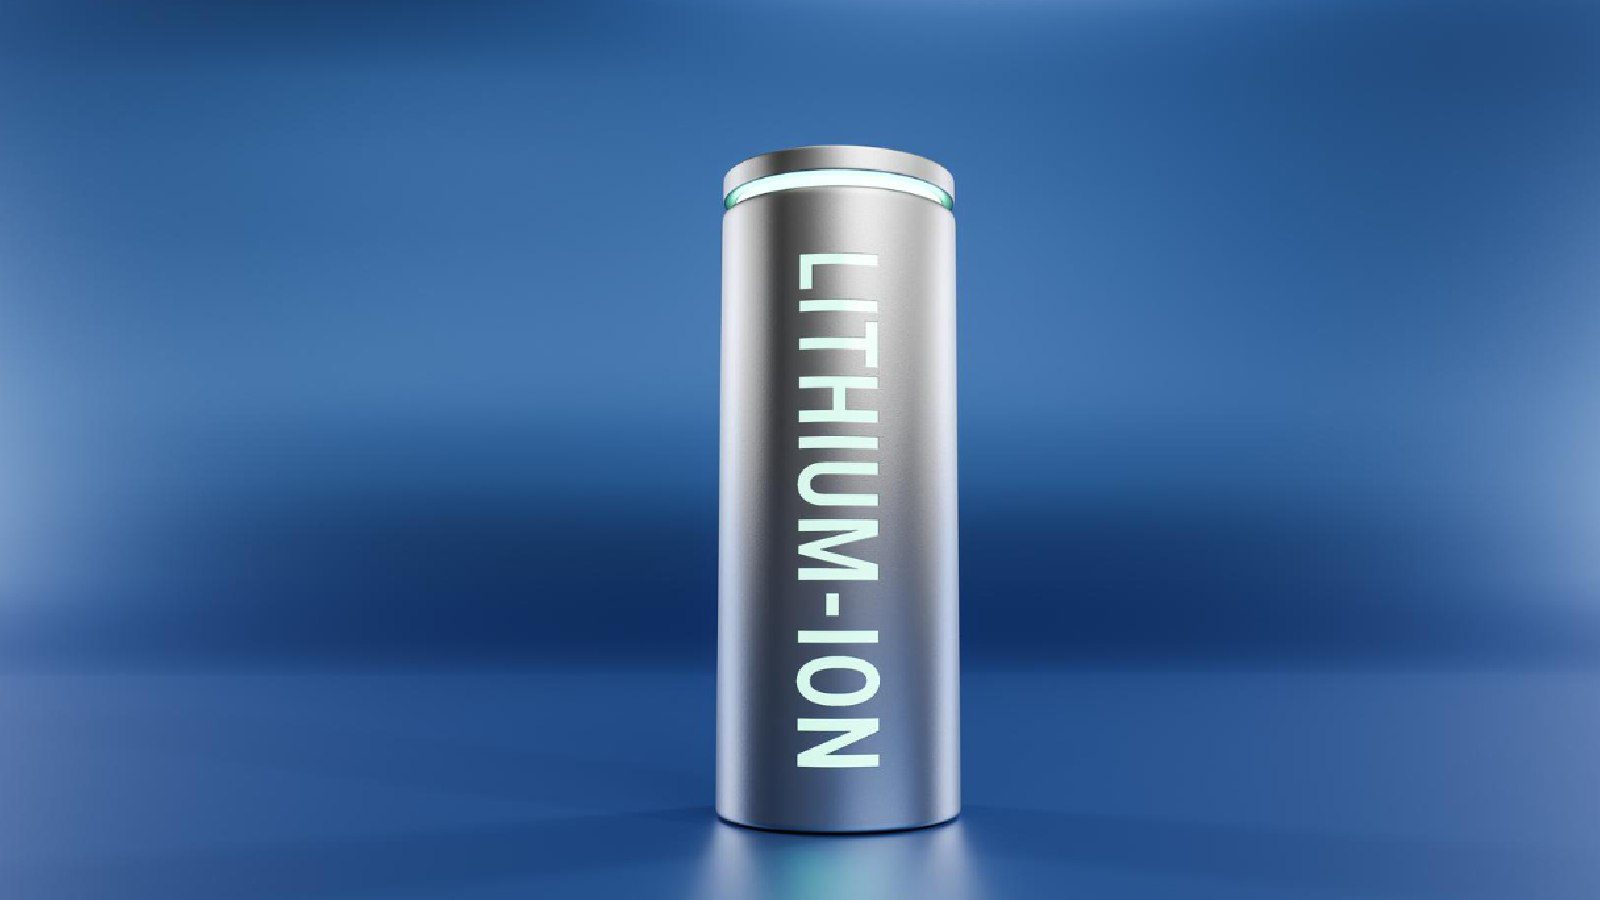 Проект поддержки правительства по разработке литий-ионного аккумулятора с высокой плотностью энергии